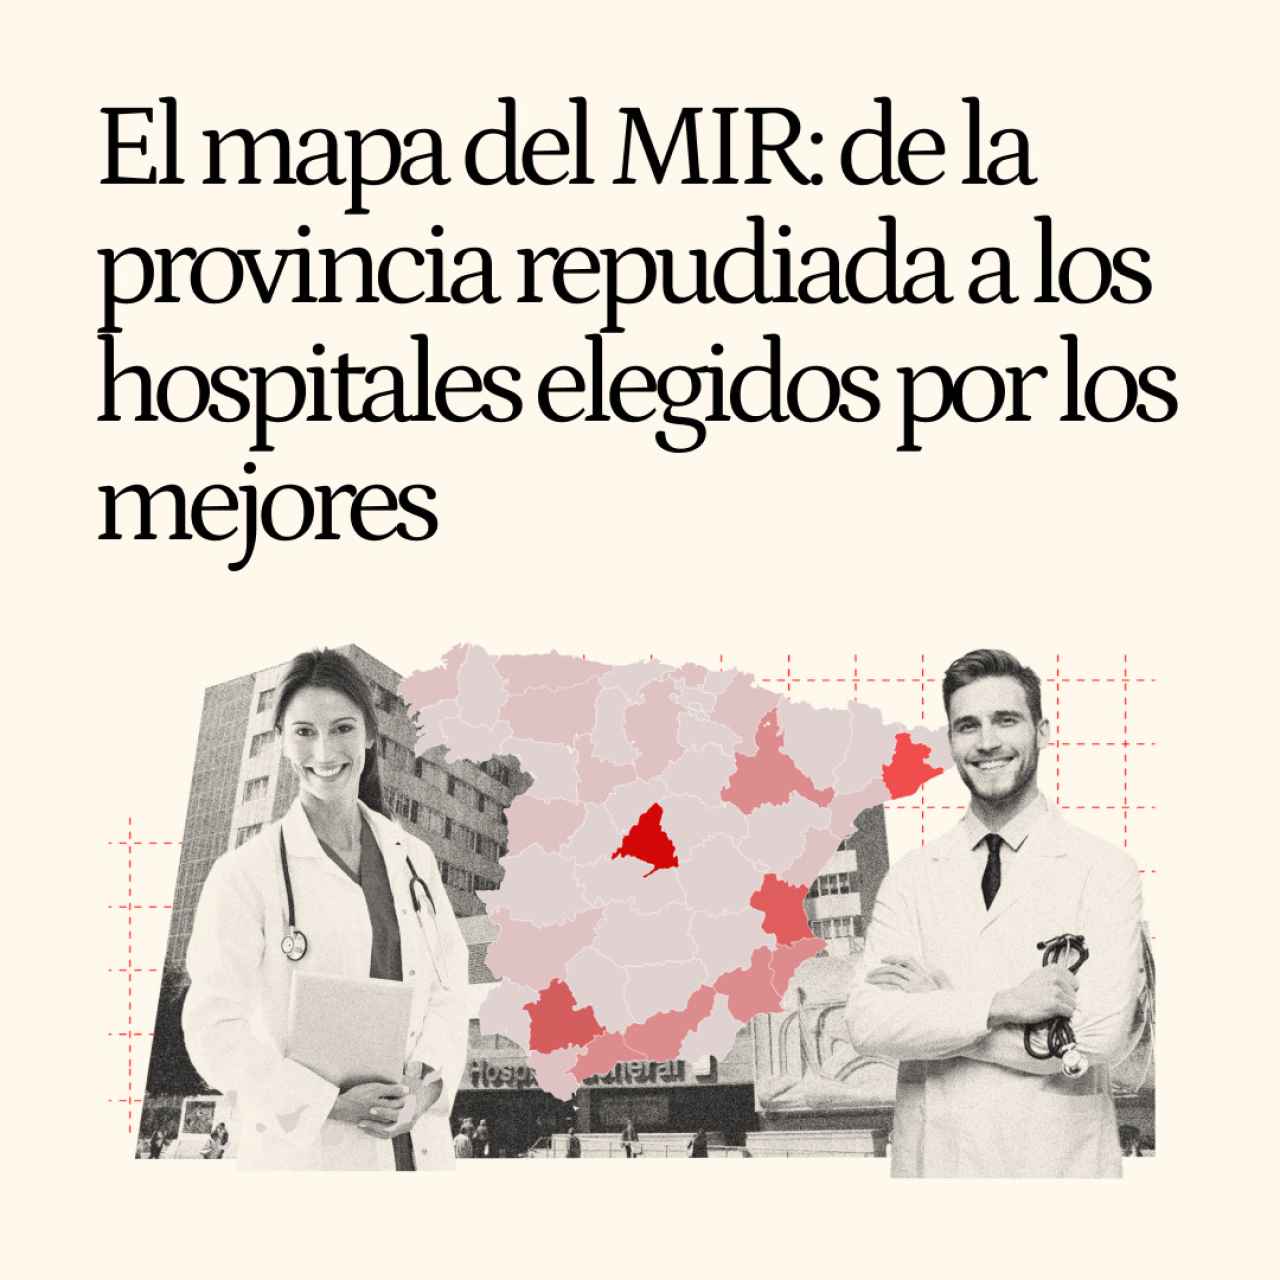 El mapa definitivo del MIR: de la provincia repudiada a los hospitales elegidos por los mejores